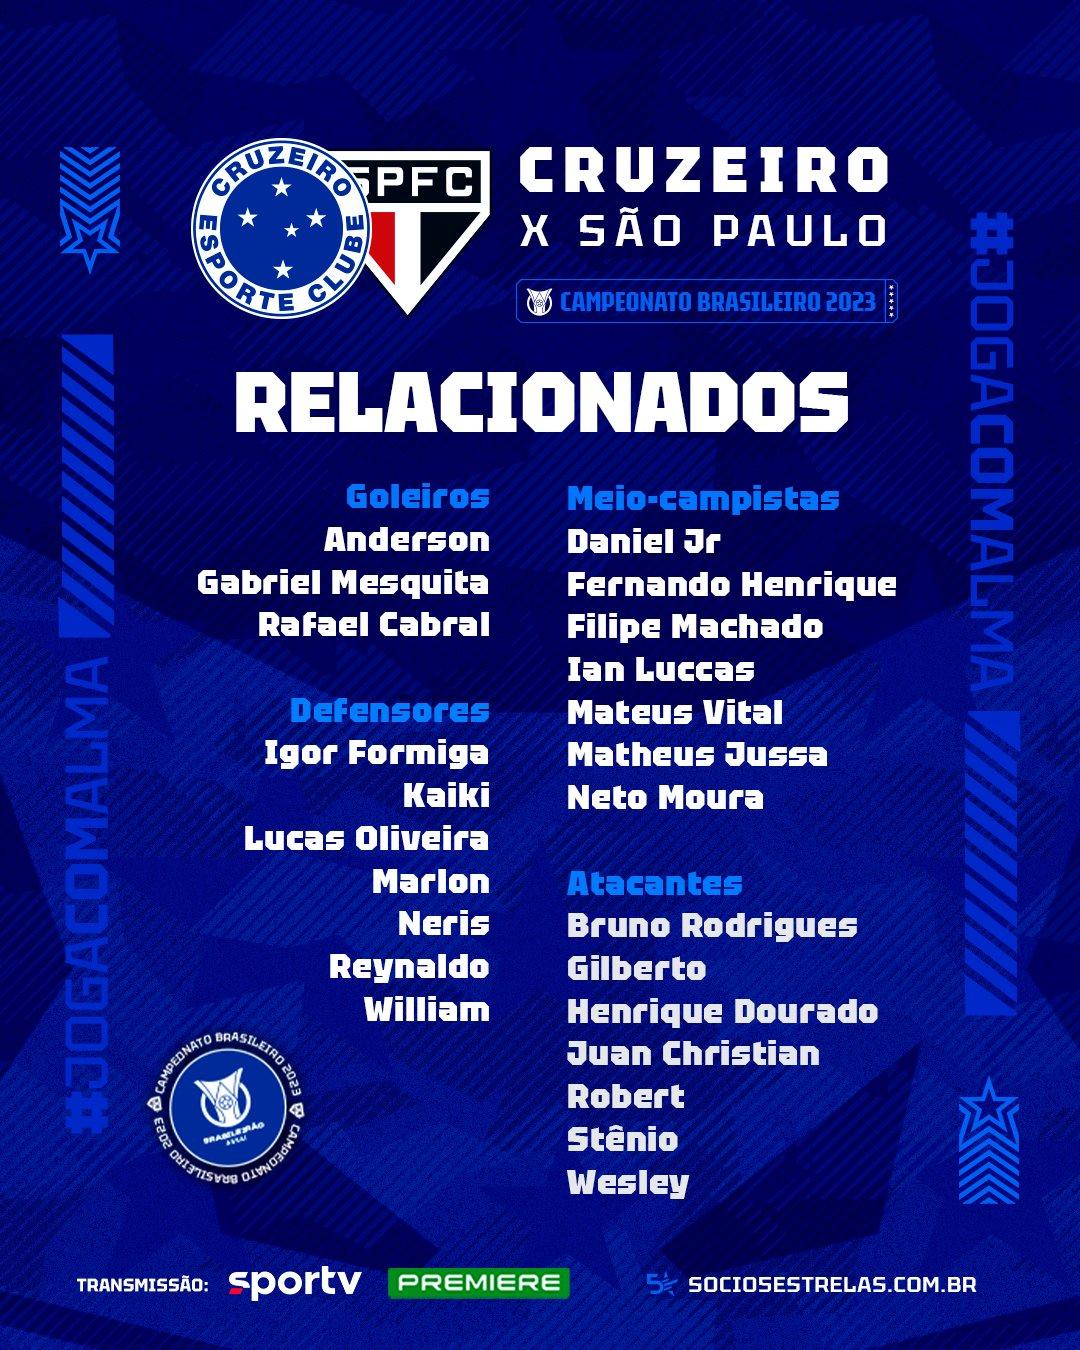 Lista completa de relacionados para o jogo contra o SP (Divulgação / Cruzeiro)